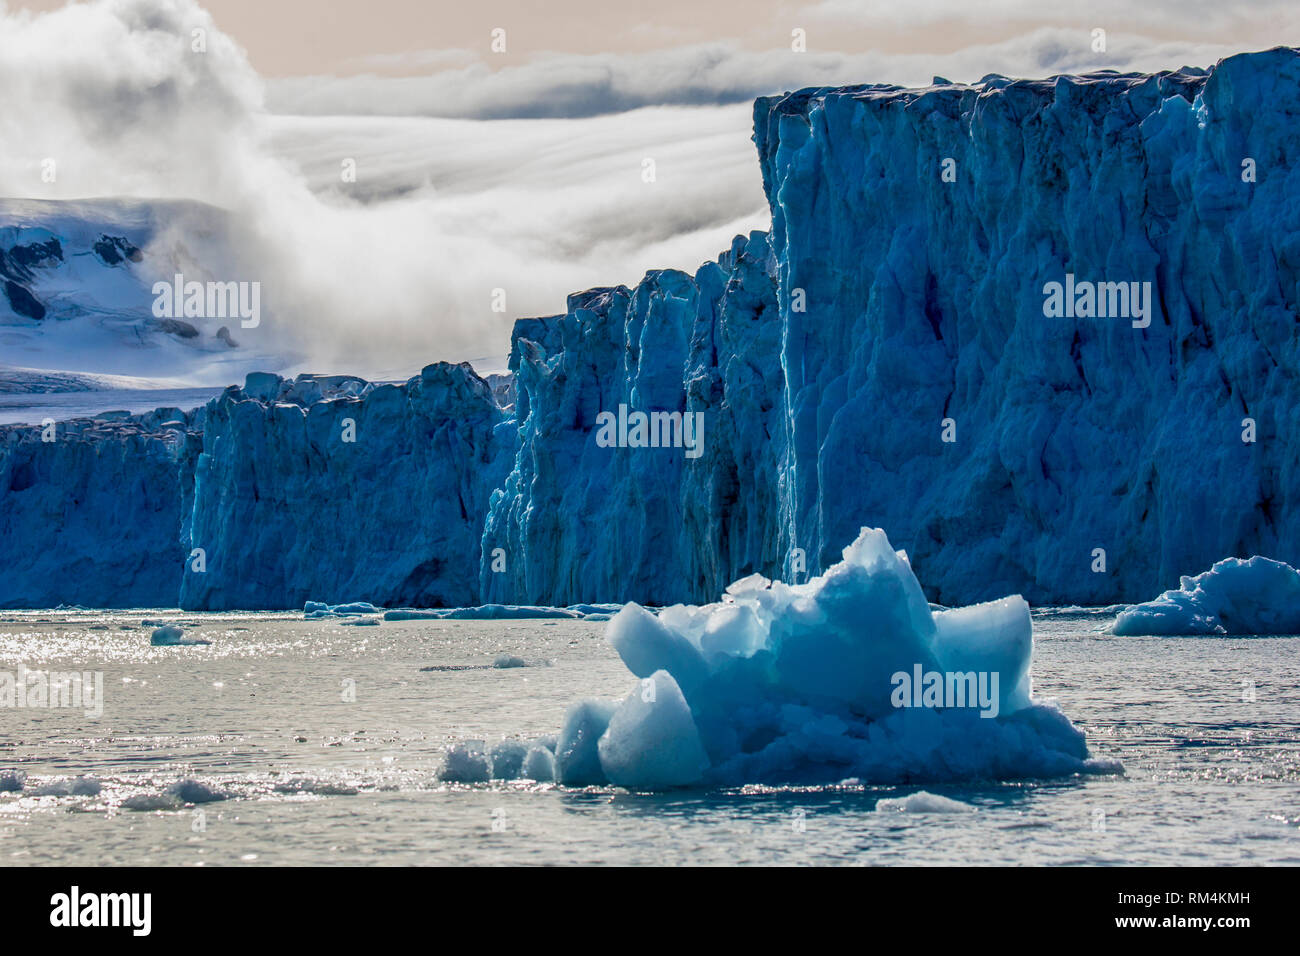 Iceberg de fusion avec banc de glace en premier plan, flottant dans la mer, de l'Antarctique Banque D'Images